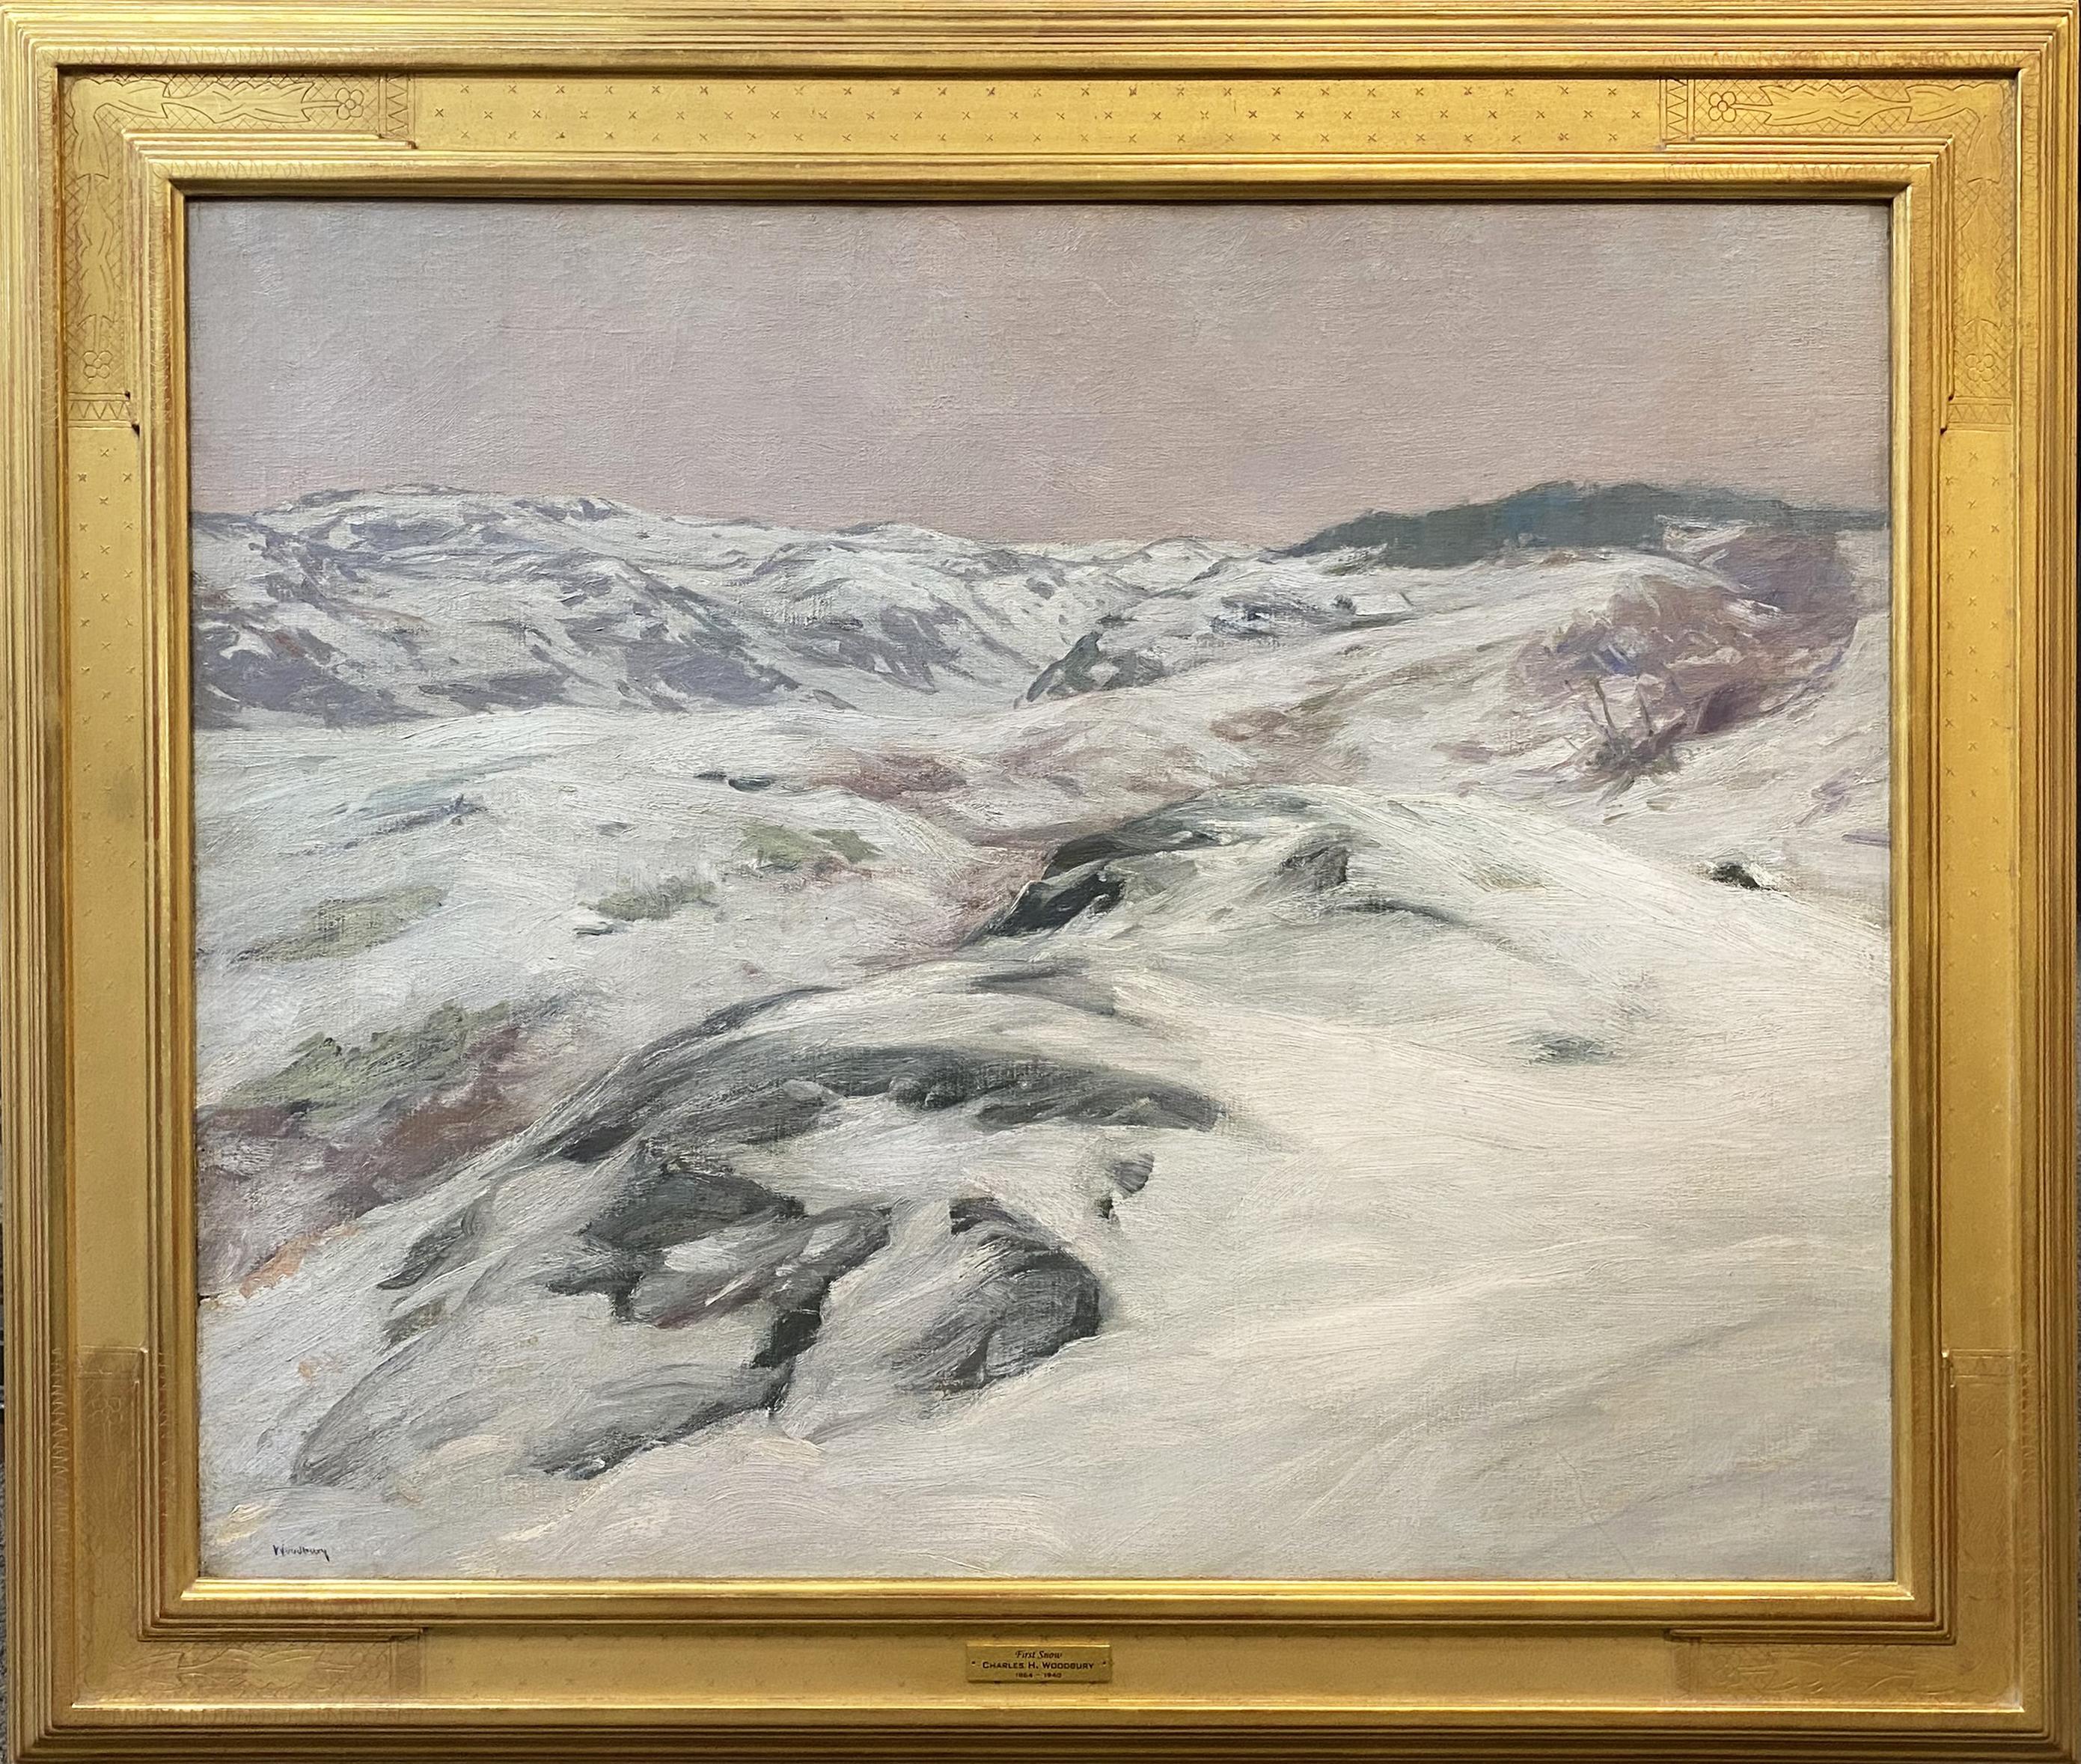 Landscape Painting Charles Herbert Woodbury - Première neige